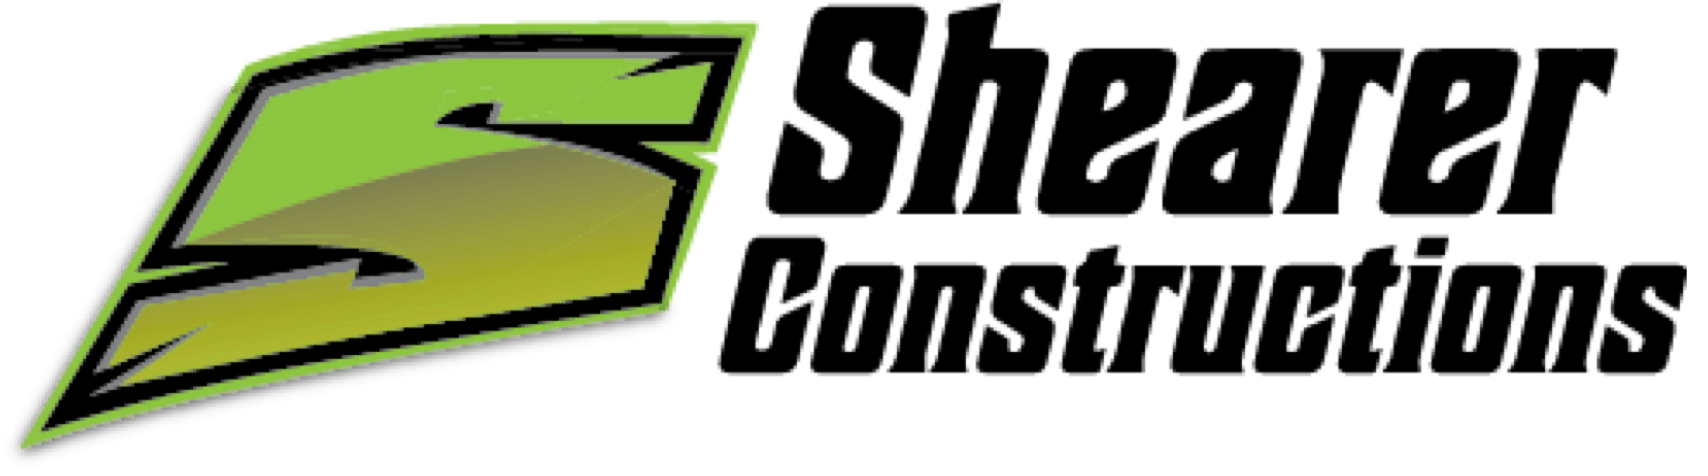 Shearers Construction Logo